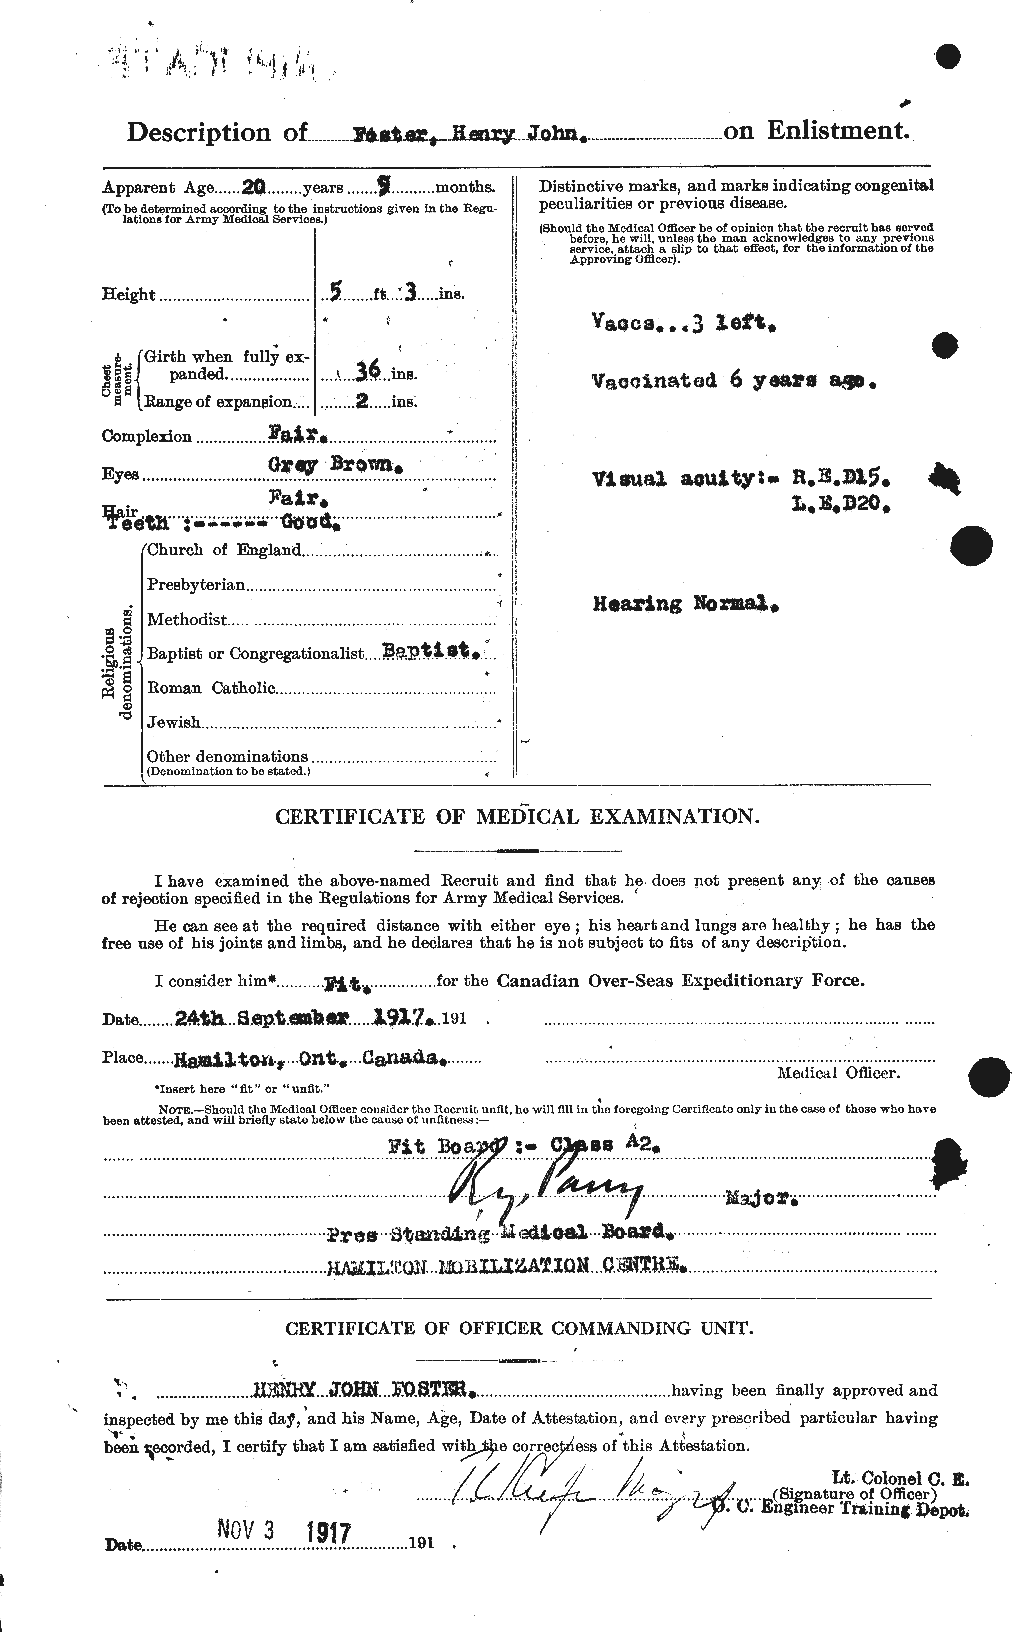 Dossiers du Personnel de la Première Guerre mondiale - CEC 333249b